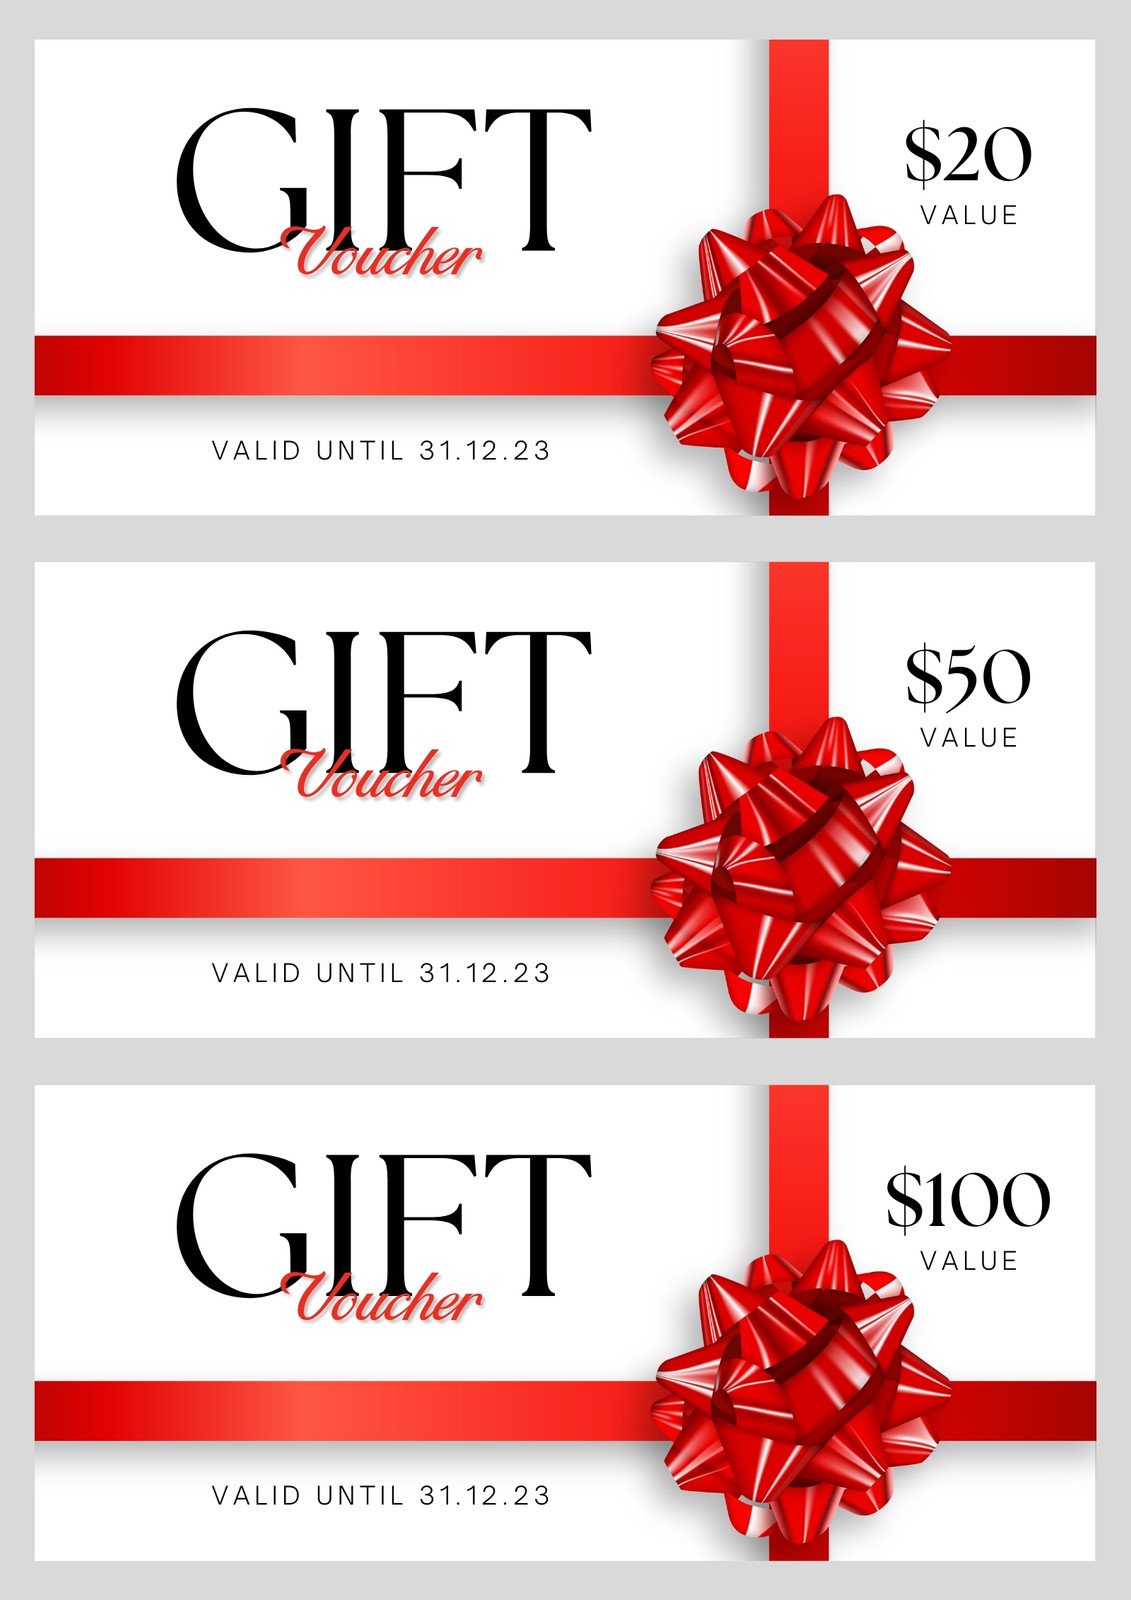 https://marketplace.canva.com/EAFYsvAmKjk/1/0/1131w/canva-white-red-elegant-ribboned-gift-coupon-S5dSrpgaSJY.jpg